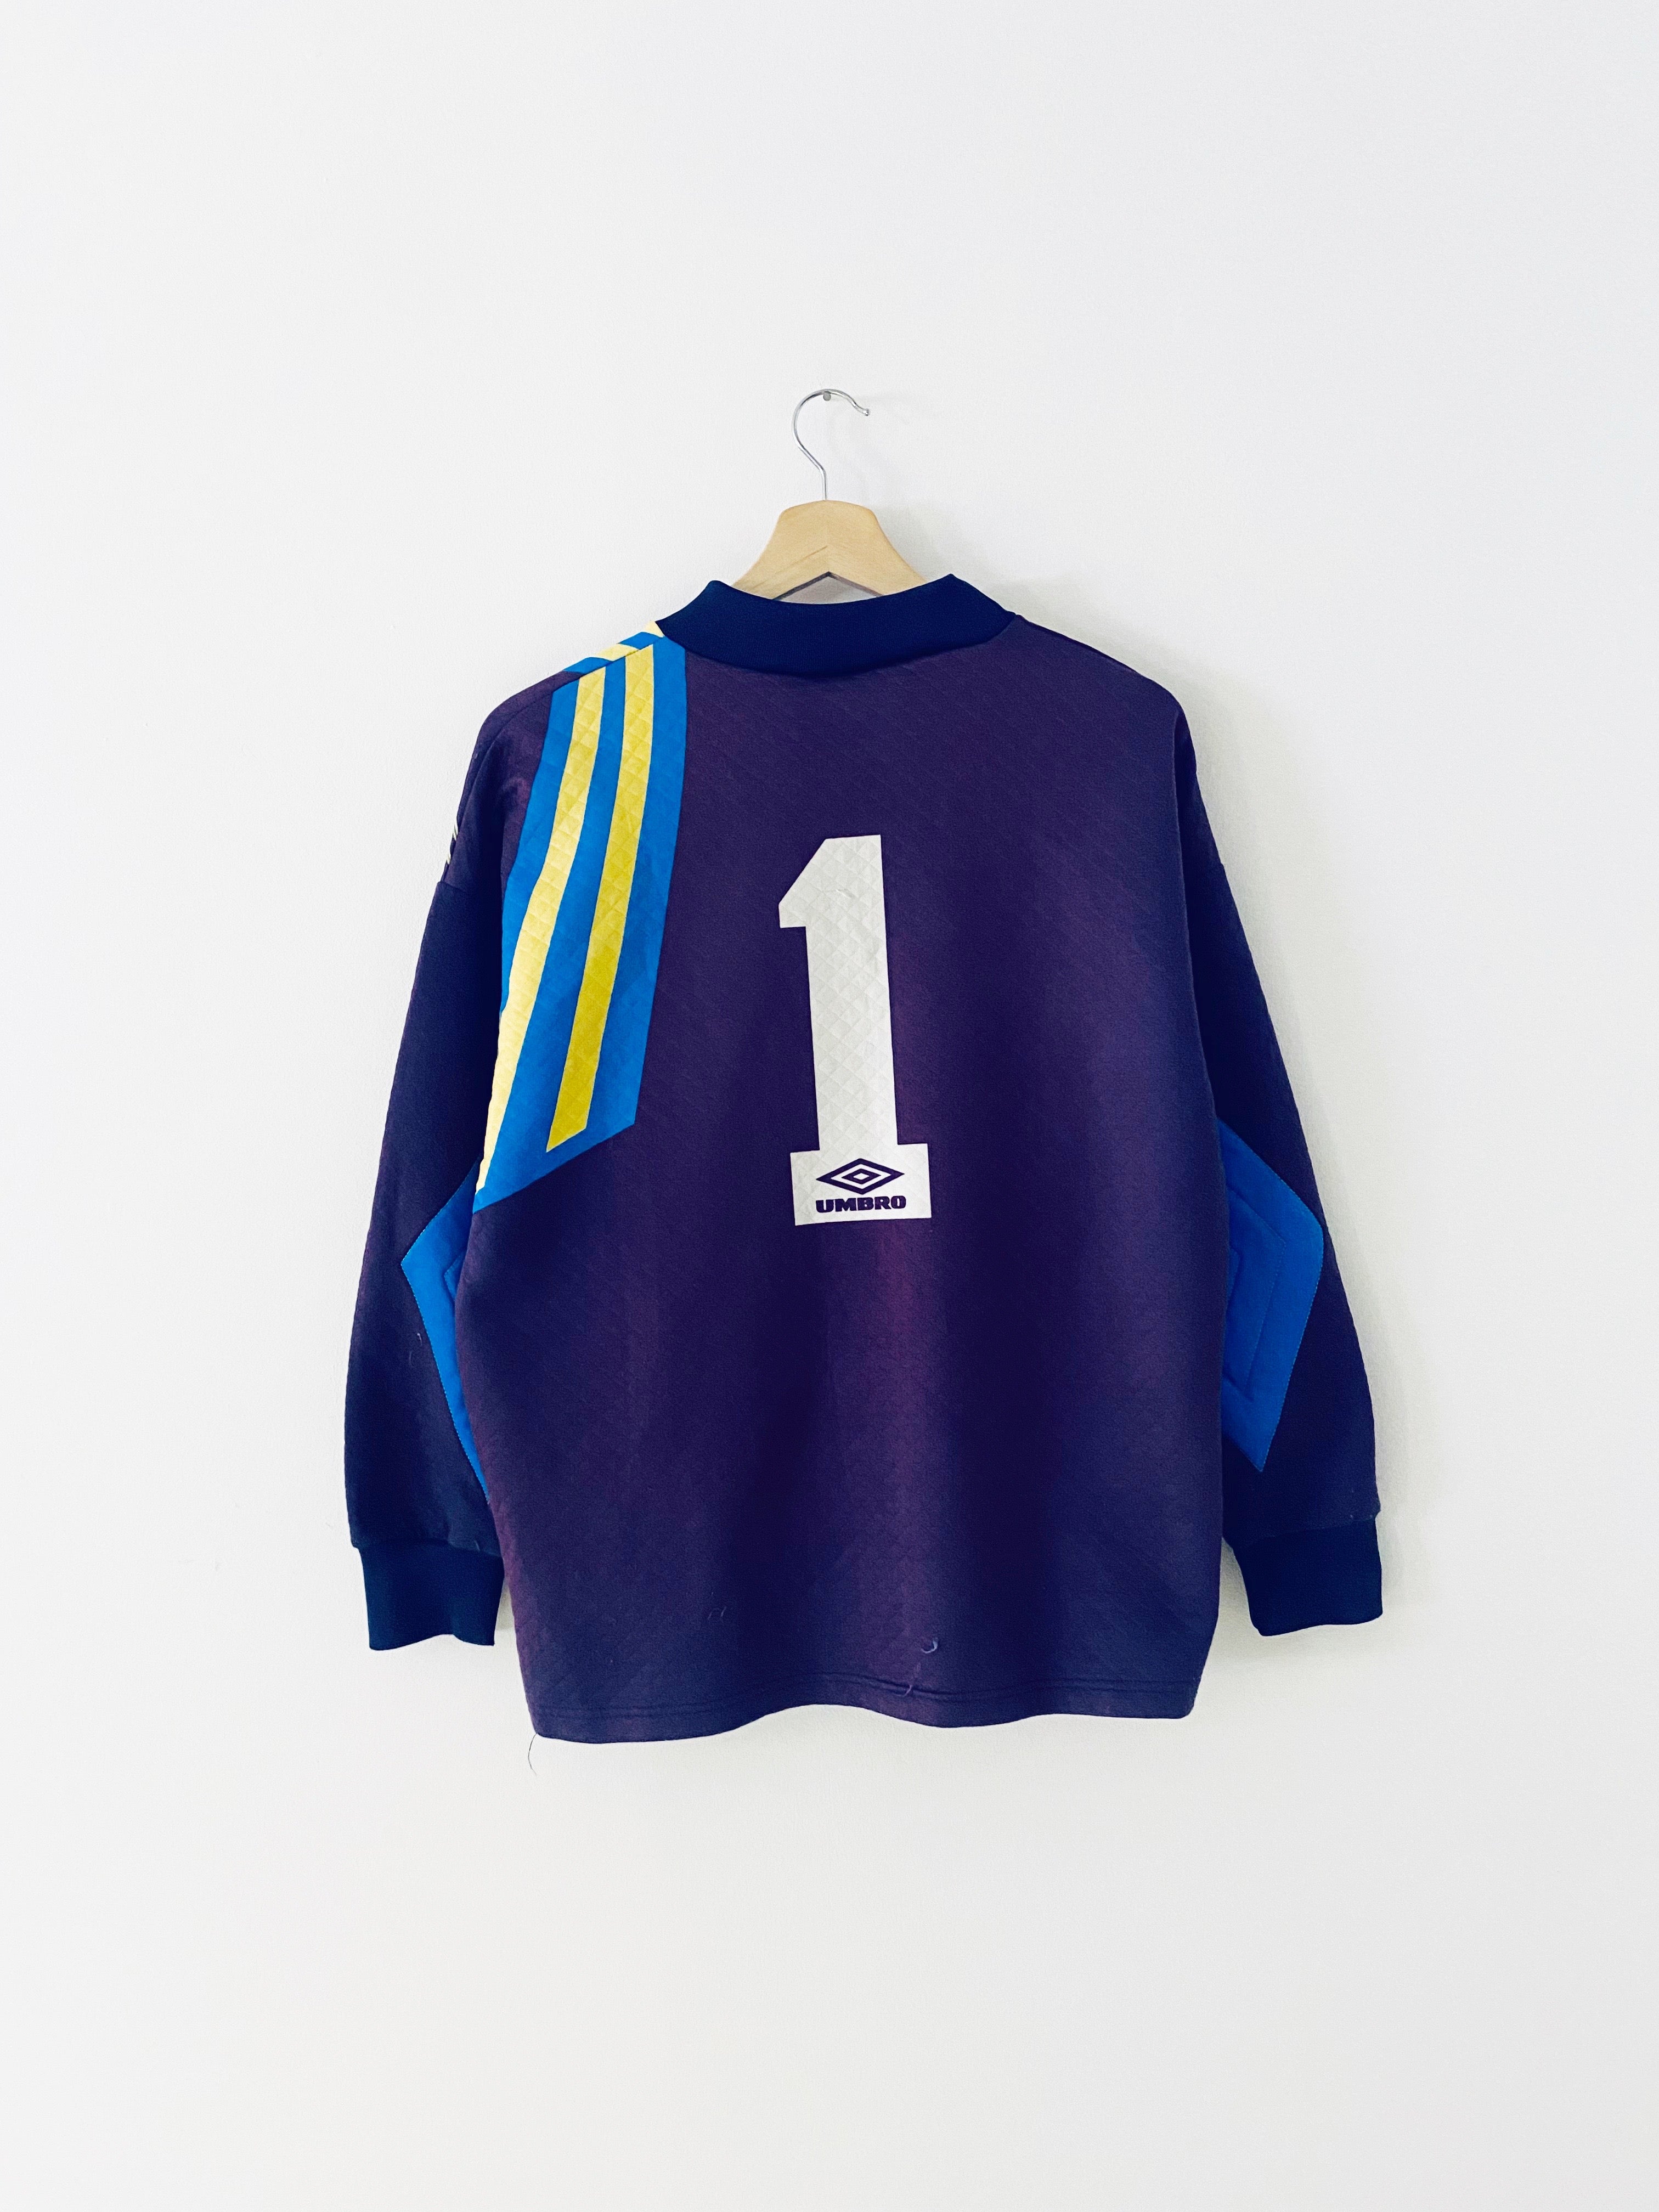 1992/93 Manchester United GK Shirt #1 (Schmeichel) (S) 7/10